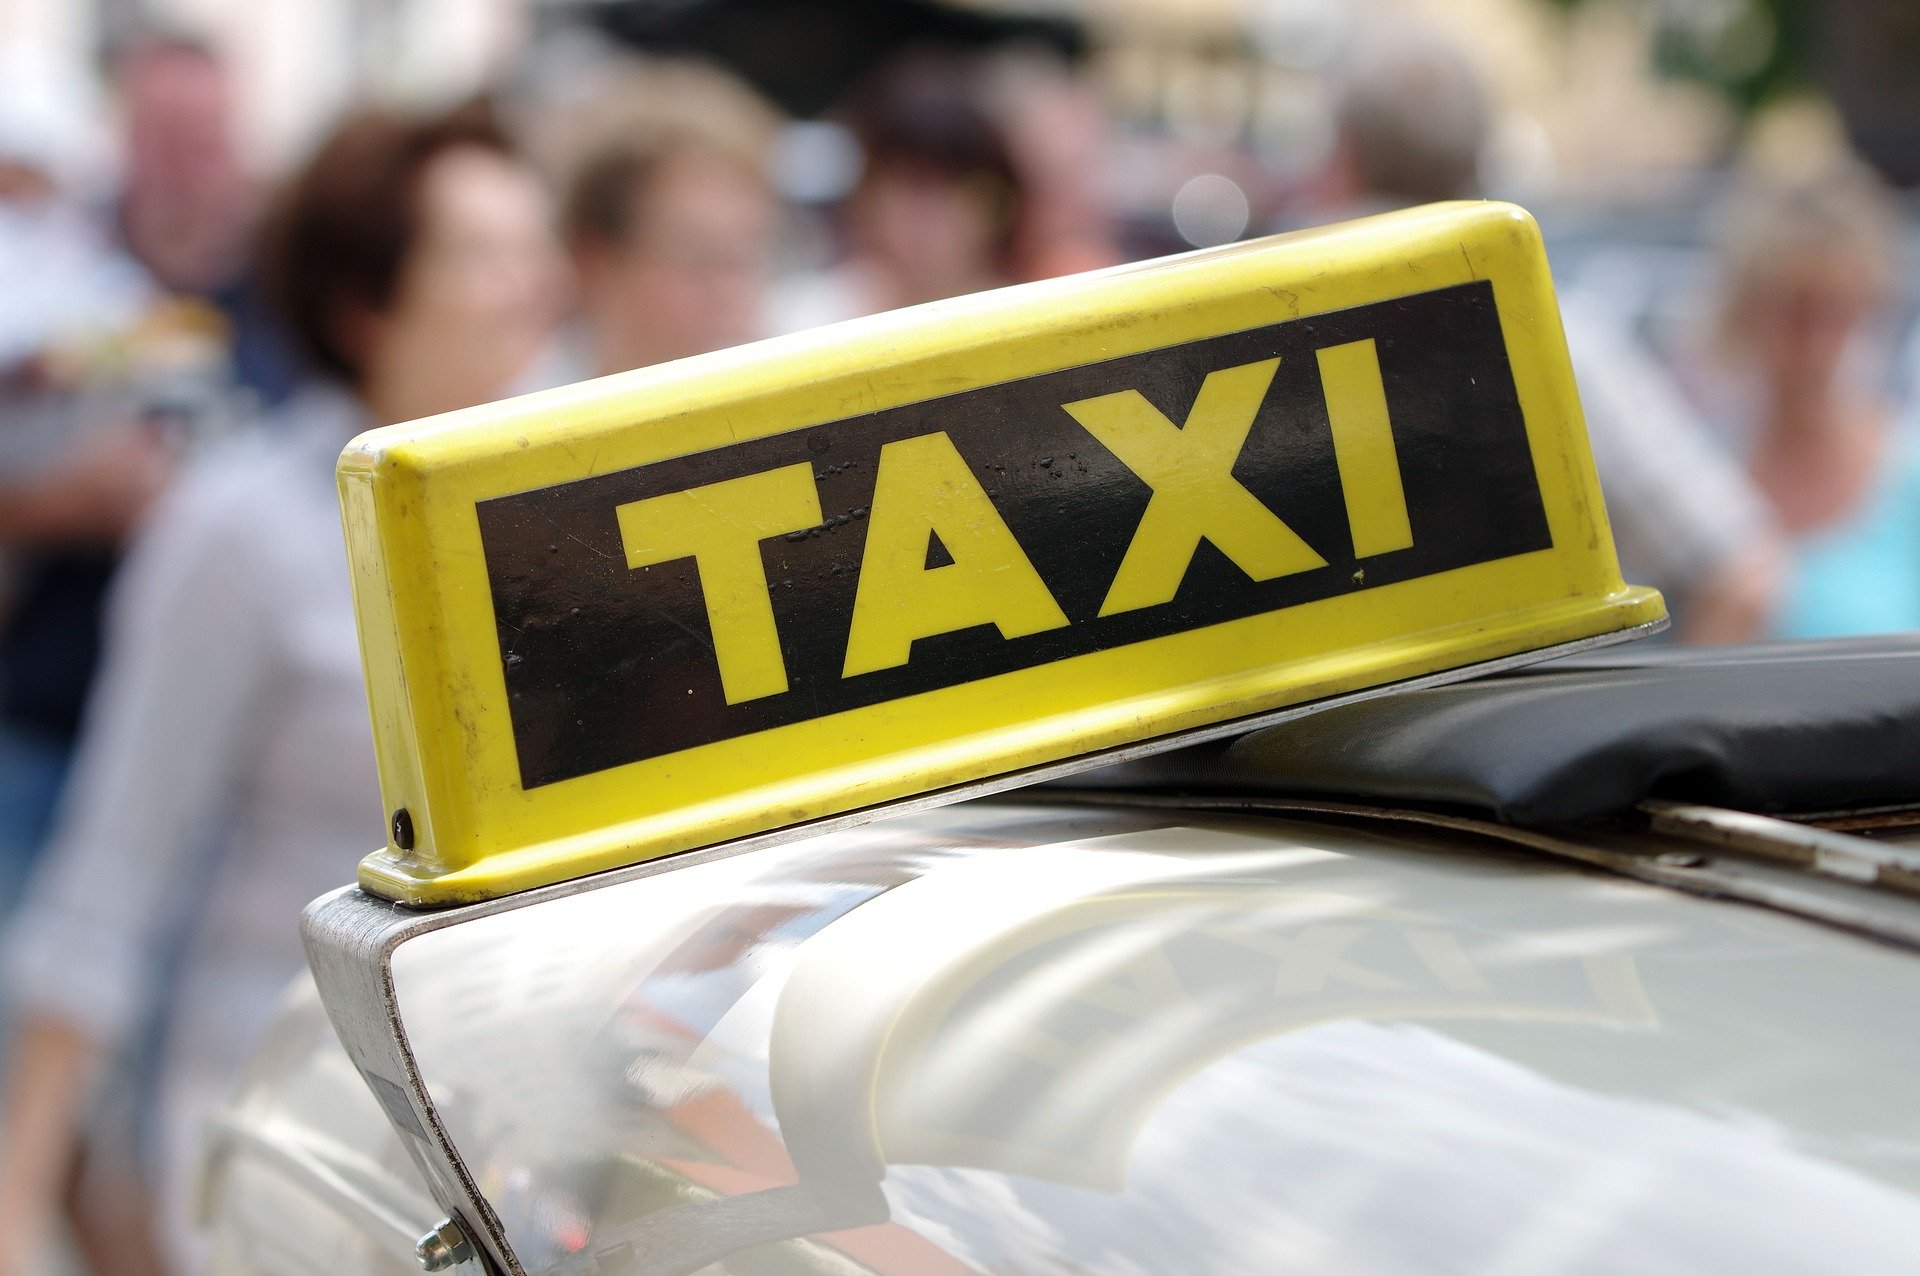 Situația incredibilă în care a ajuns un taximetrist care a vrut să își ajute clienții: a primit un pumn în față